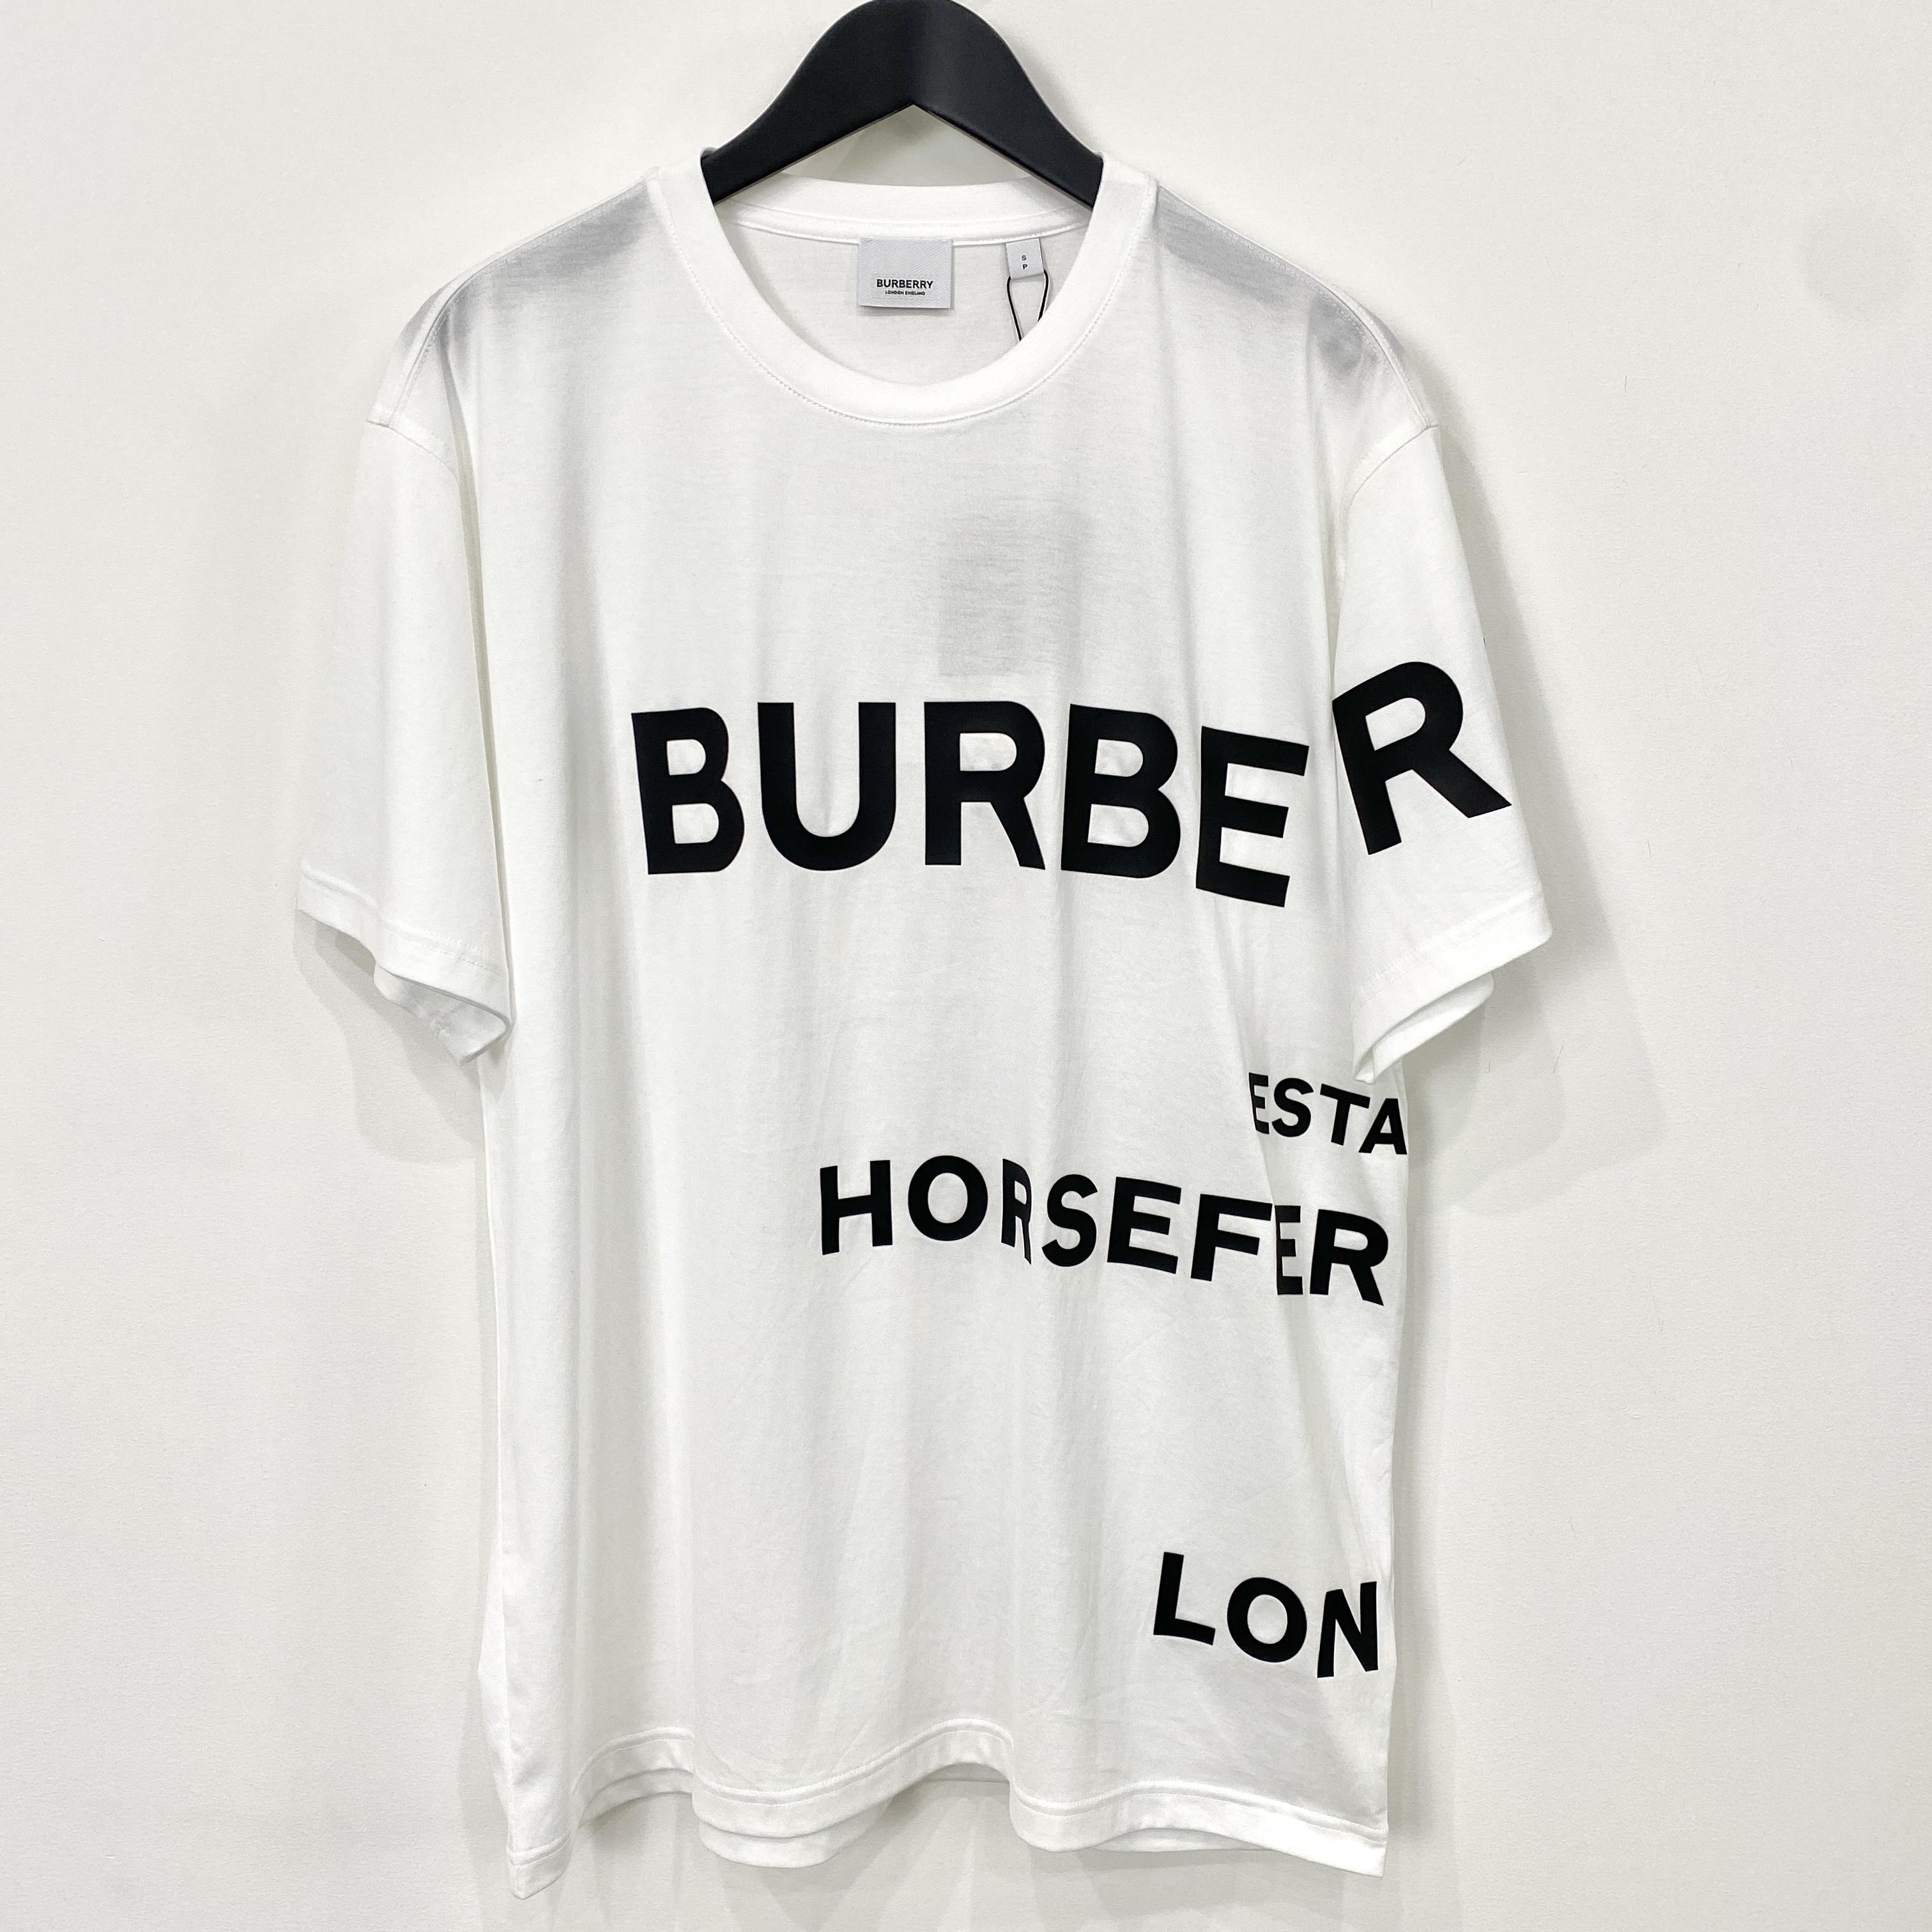 【BURBBERY】バーバリー / Horseferry t-SHIRT / オーバーサイズ / WHITE